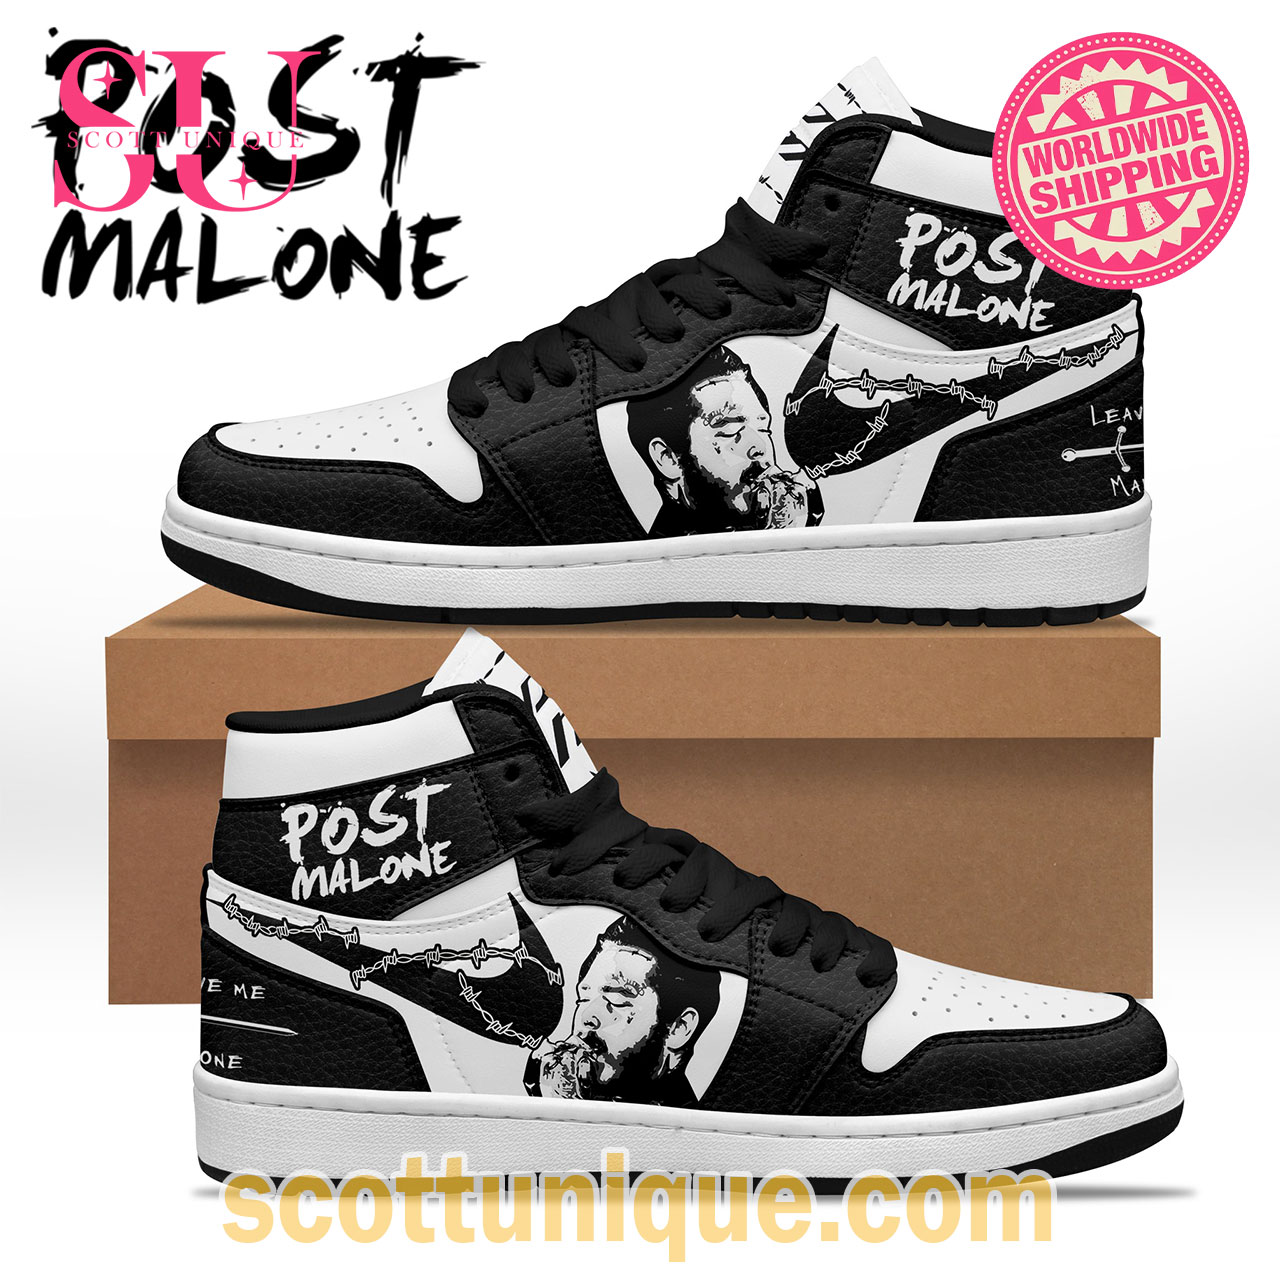 Post Malone Black  “Leave Me Malone” Air Jordan High Top Sneakers